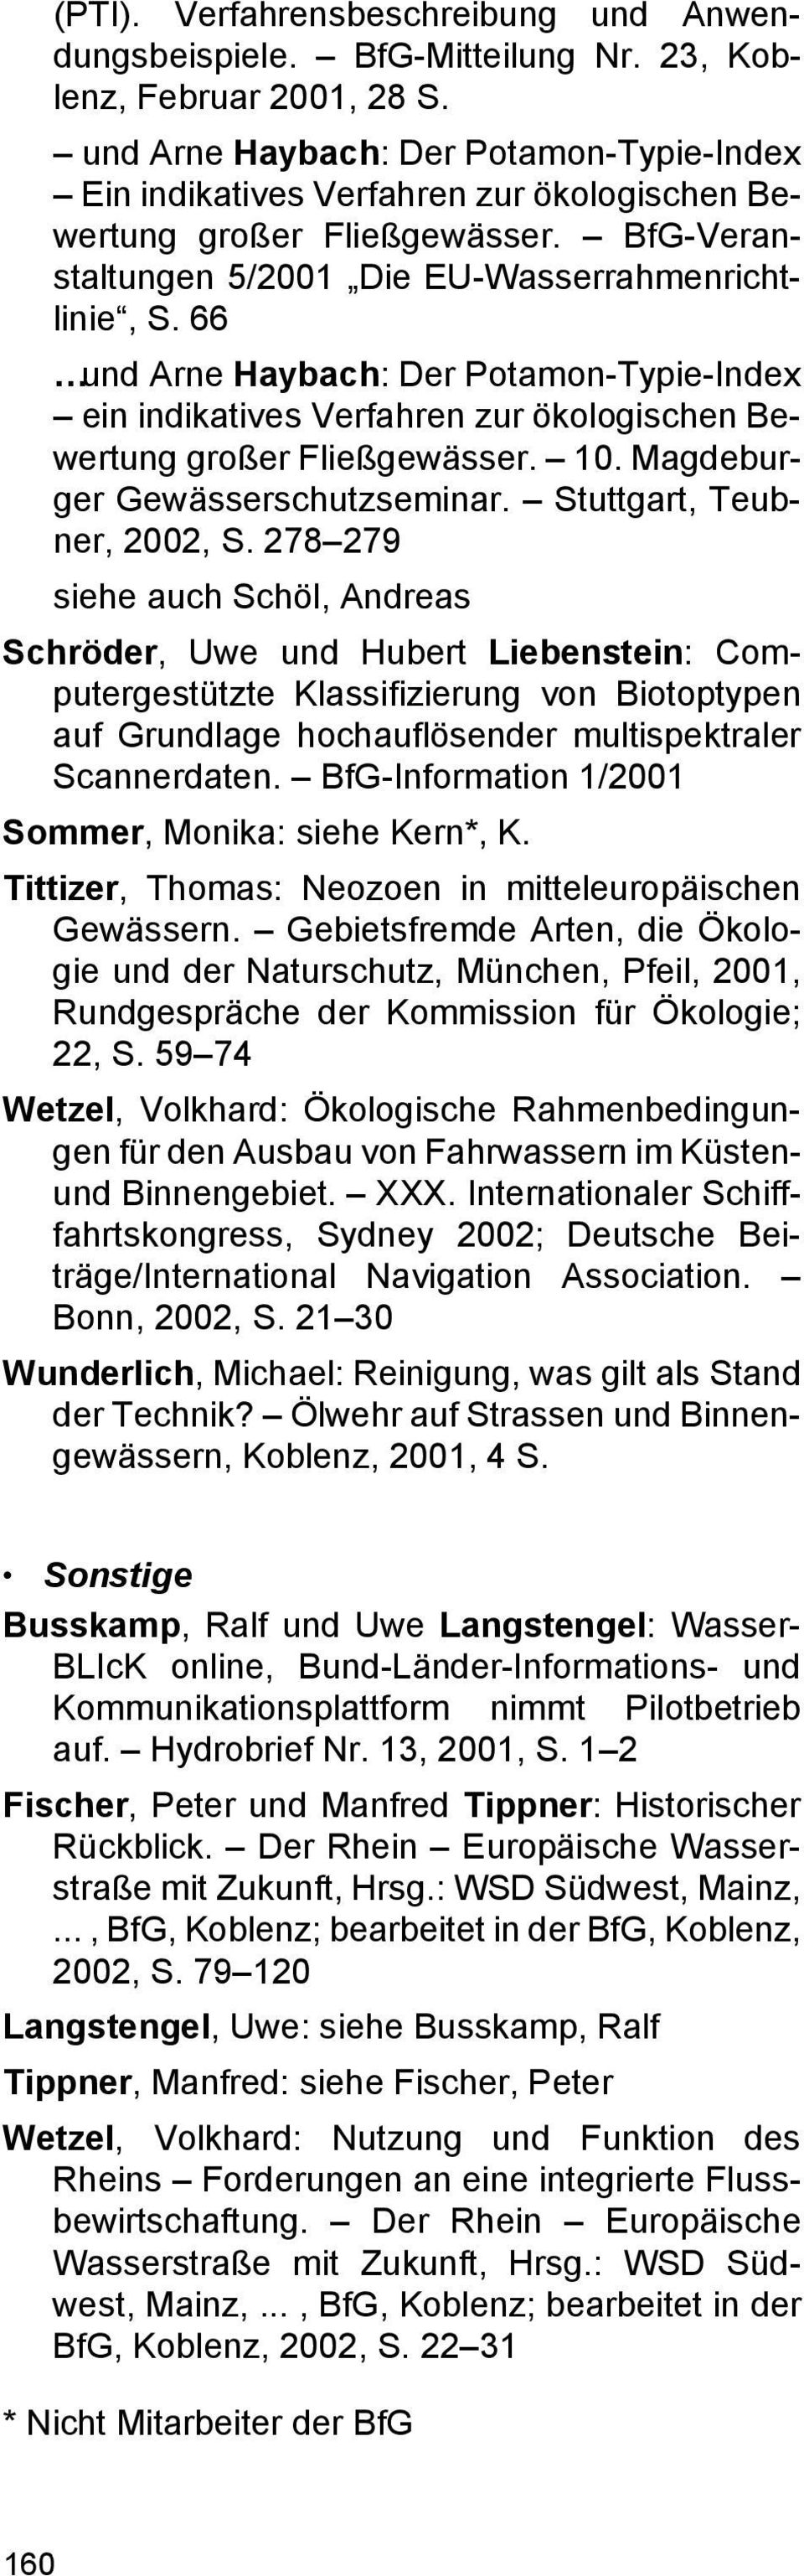 66 und Arne Haybach: Der Potamon-Typie-Index ein indikatives Verfahren zur ökologischen Bewertung großer Fließgewässer. 10. Magdeburger Gewässerschutzseminar. Stuttgart, Teubner, 2002, S.